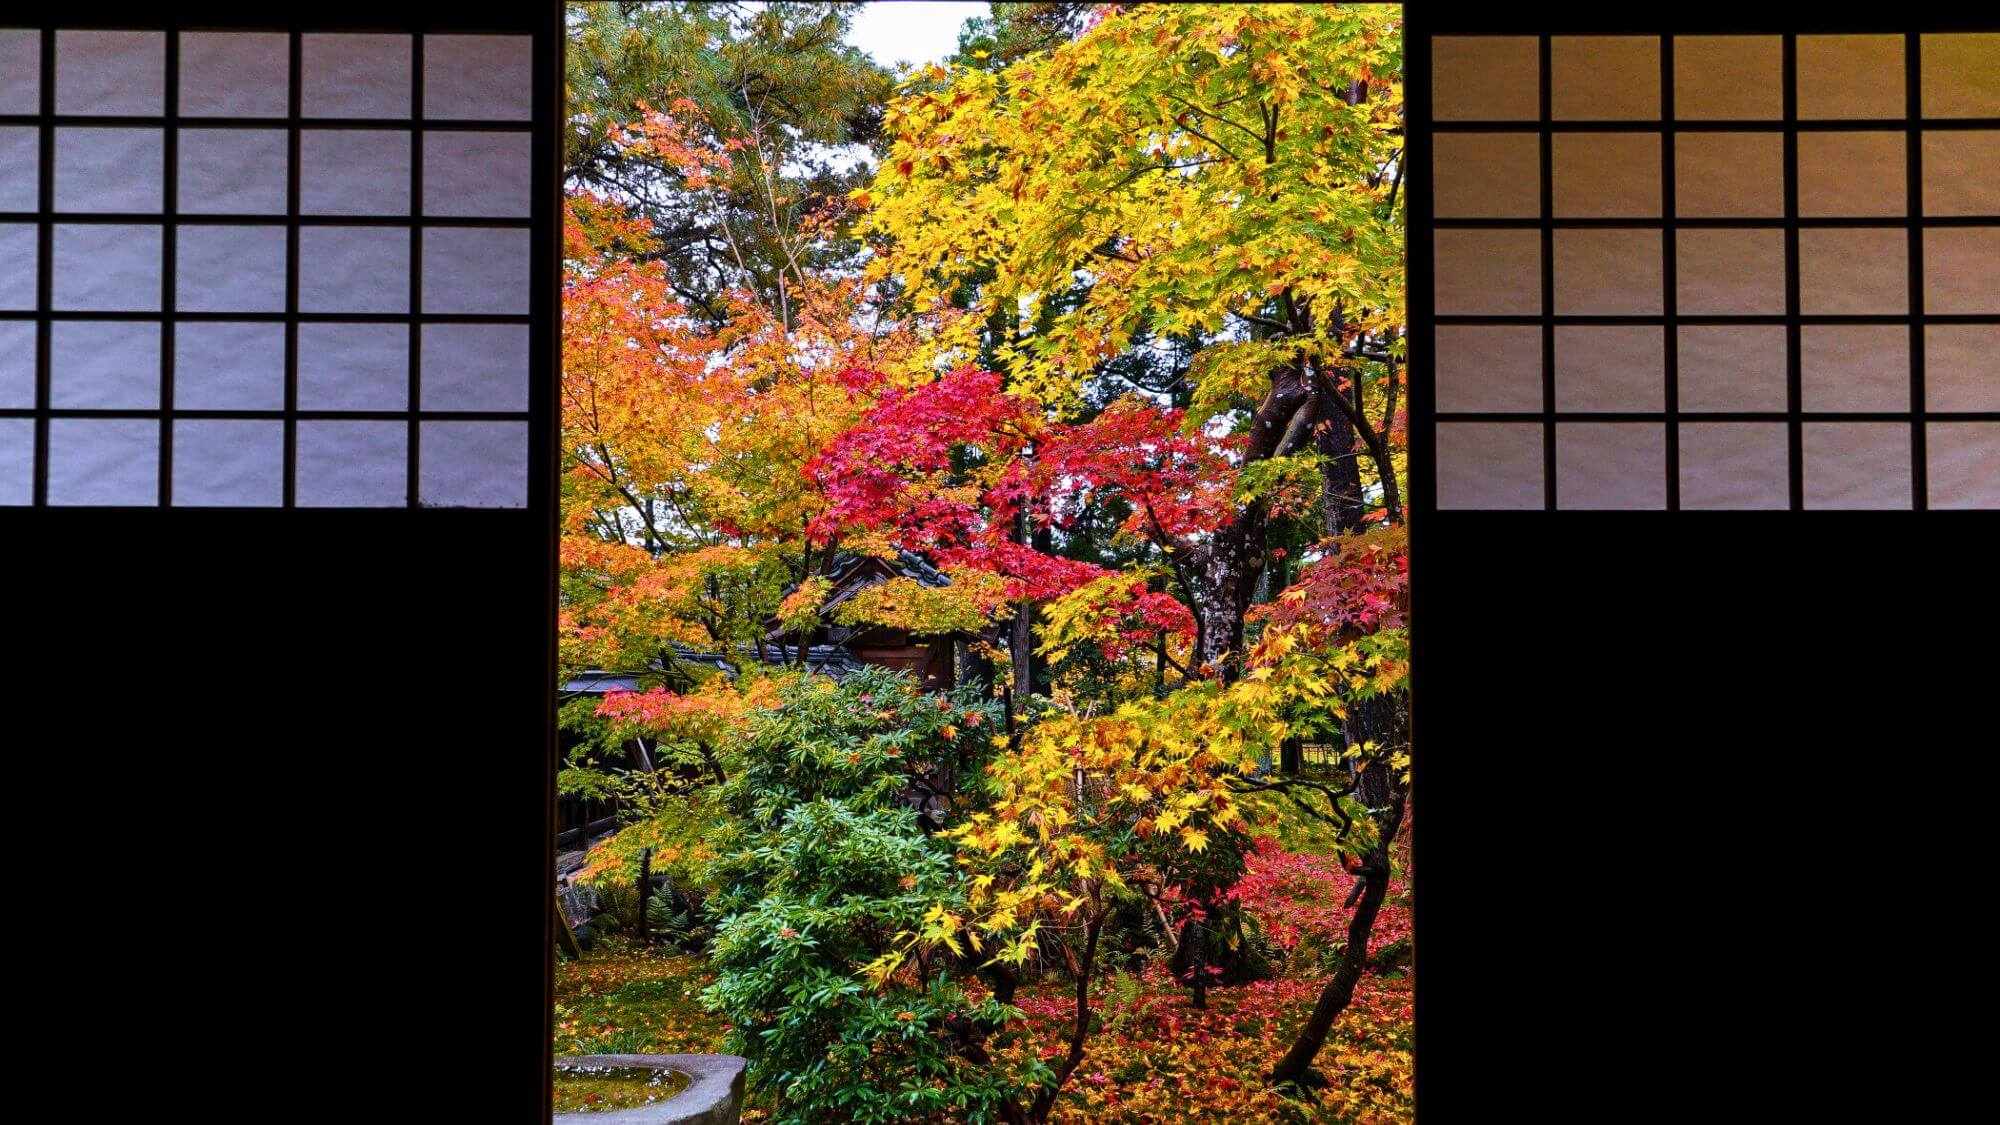 【清水園】お車15分。秋には茶室から紅葉と池泉の景観を楽しめます。